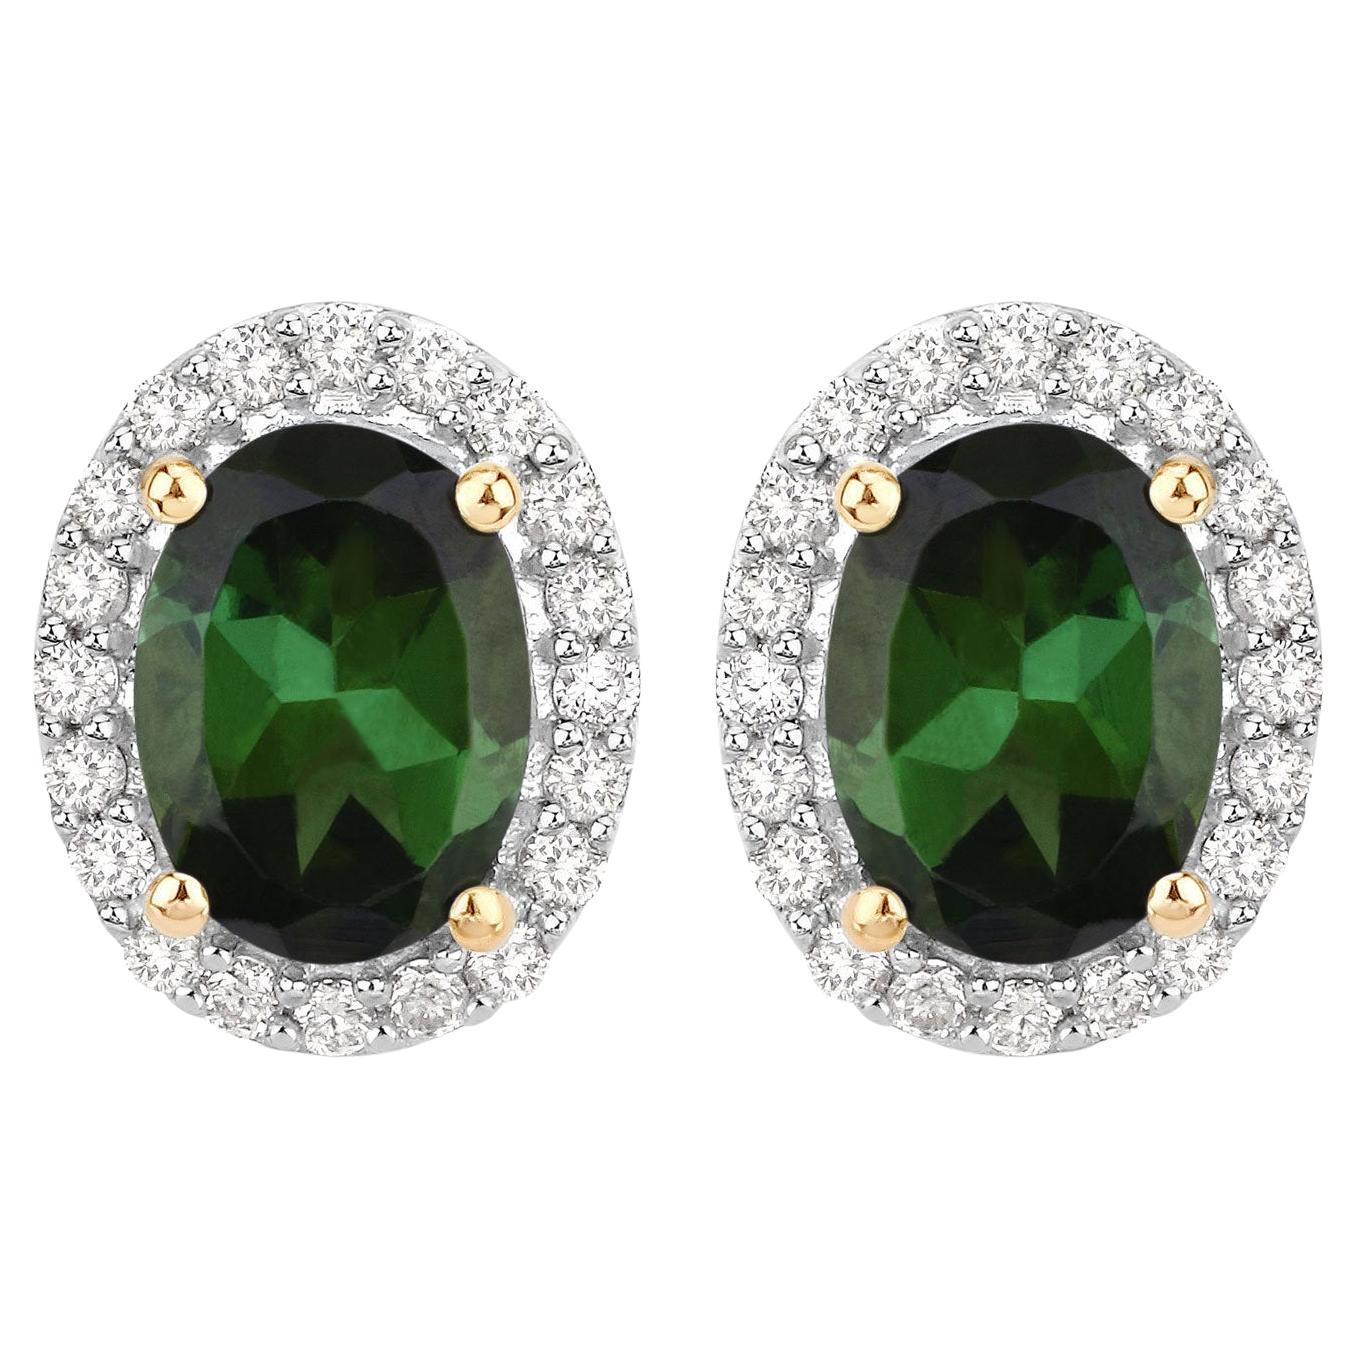 Natürlicher grüner Turmalin und Diamant-Halo-Ohrringe 2 Karat 14k Gelbgold